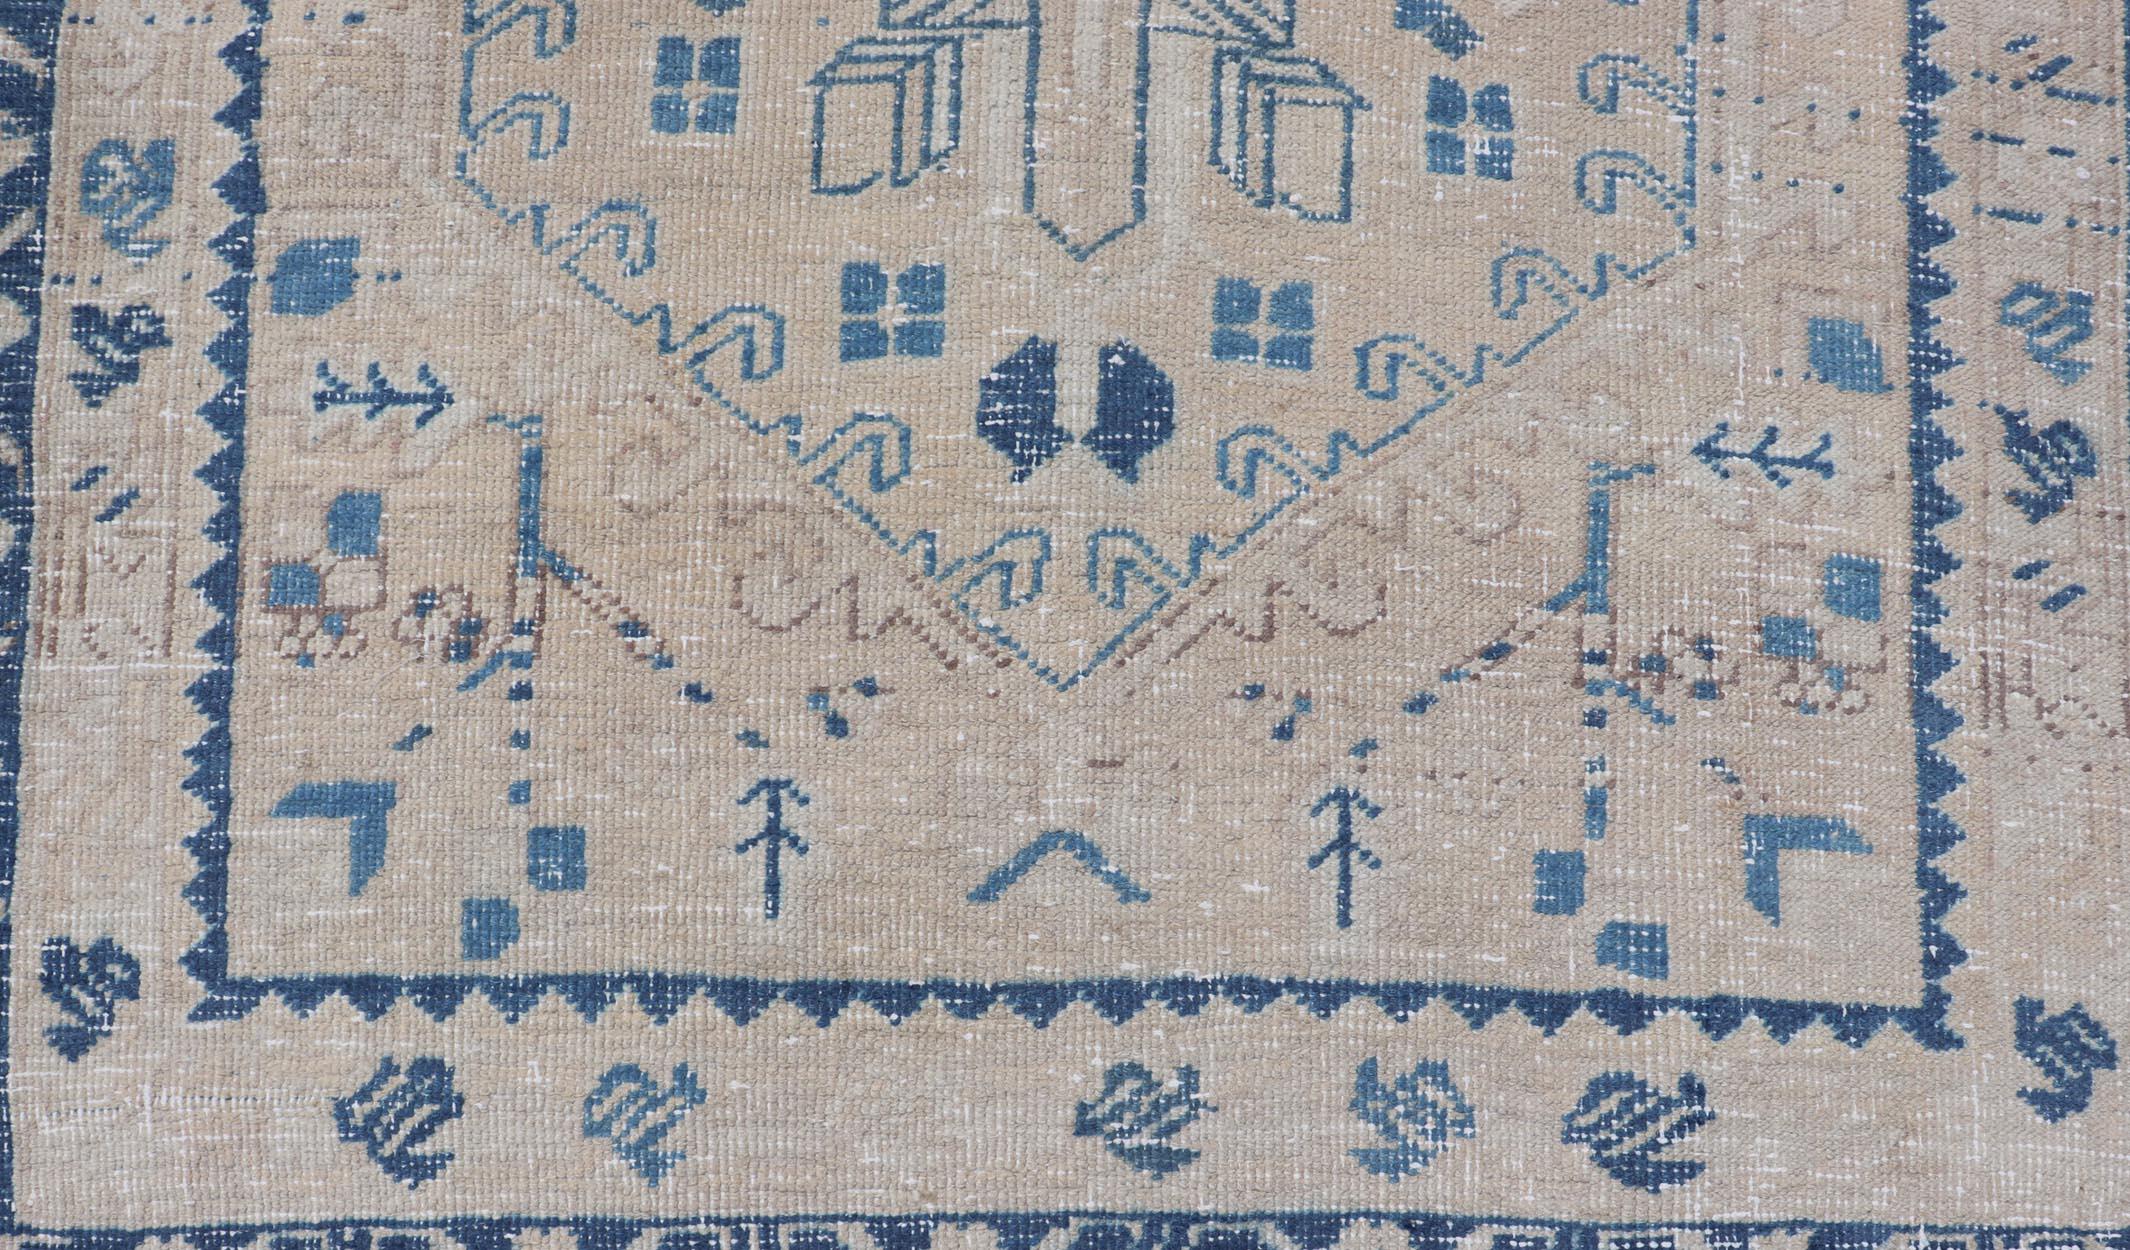 Tapis de course vintage persan Heriz avec des médaillons en brun clair, tan et bleu varié. Tapis Keivan Woven Arts CRV-10056887, pays d'origine / type : Iran / Heriz, vers le milieu du 20e siècle
Mesures : 3'4 x 9'7 

Ce magnifique tapis persan du